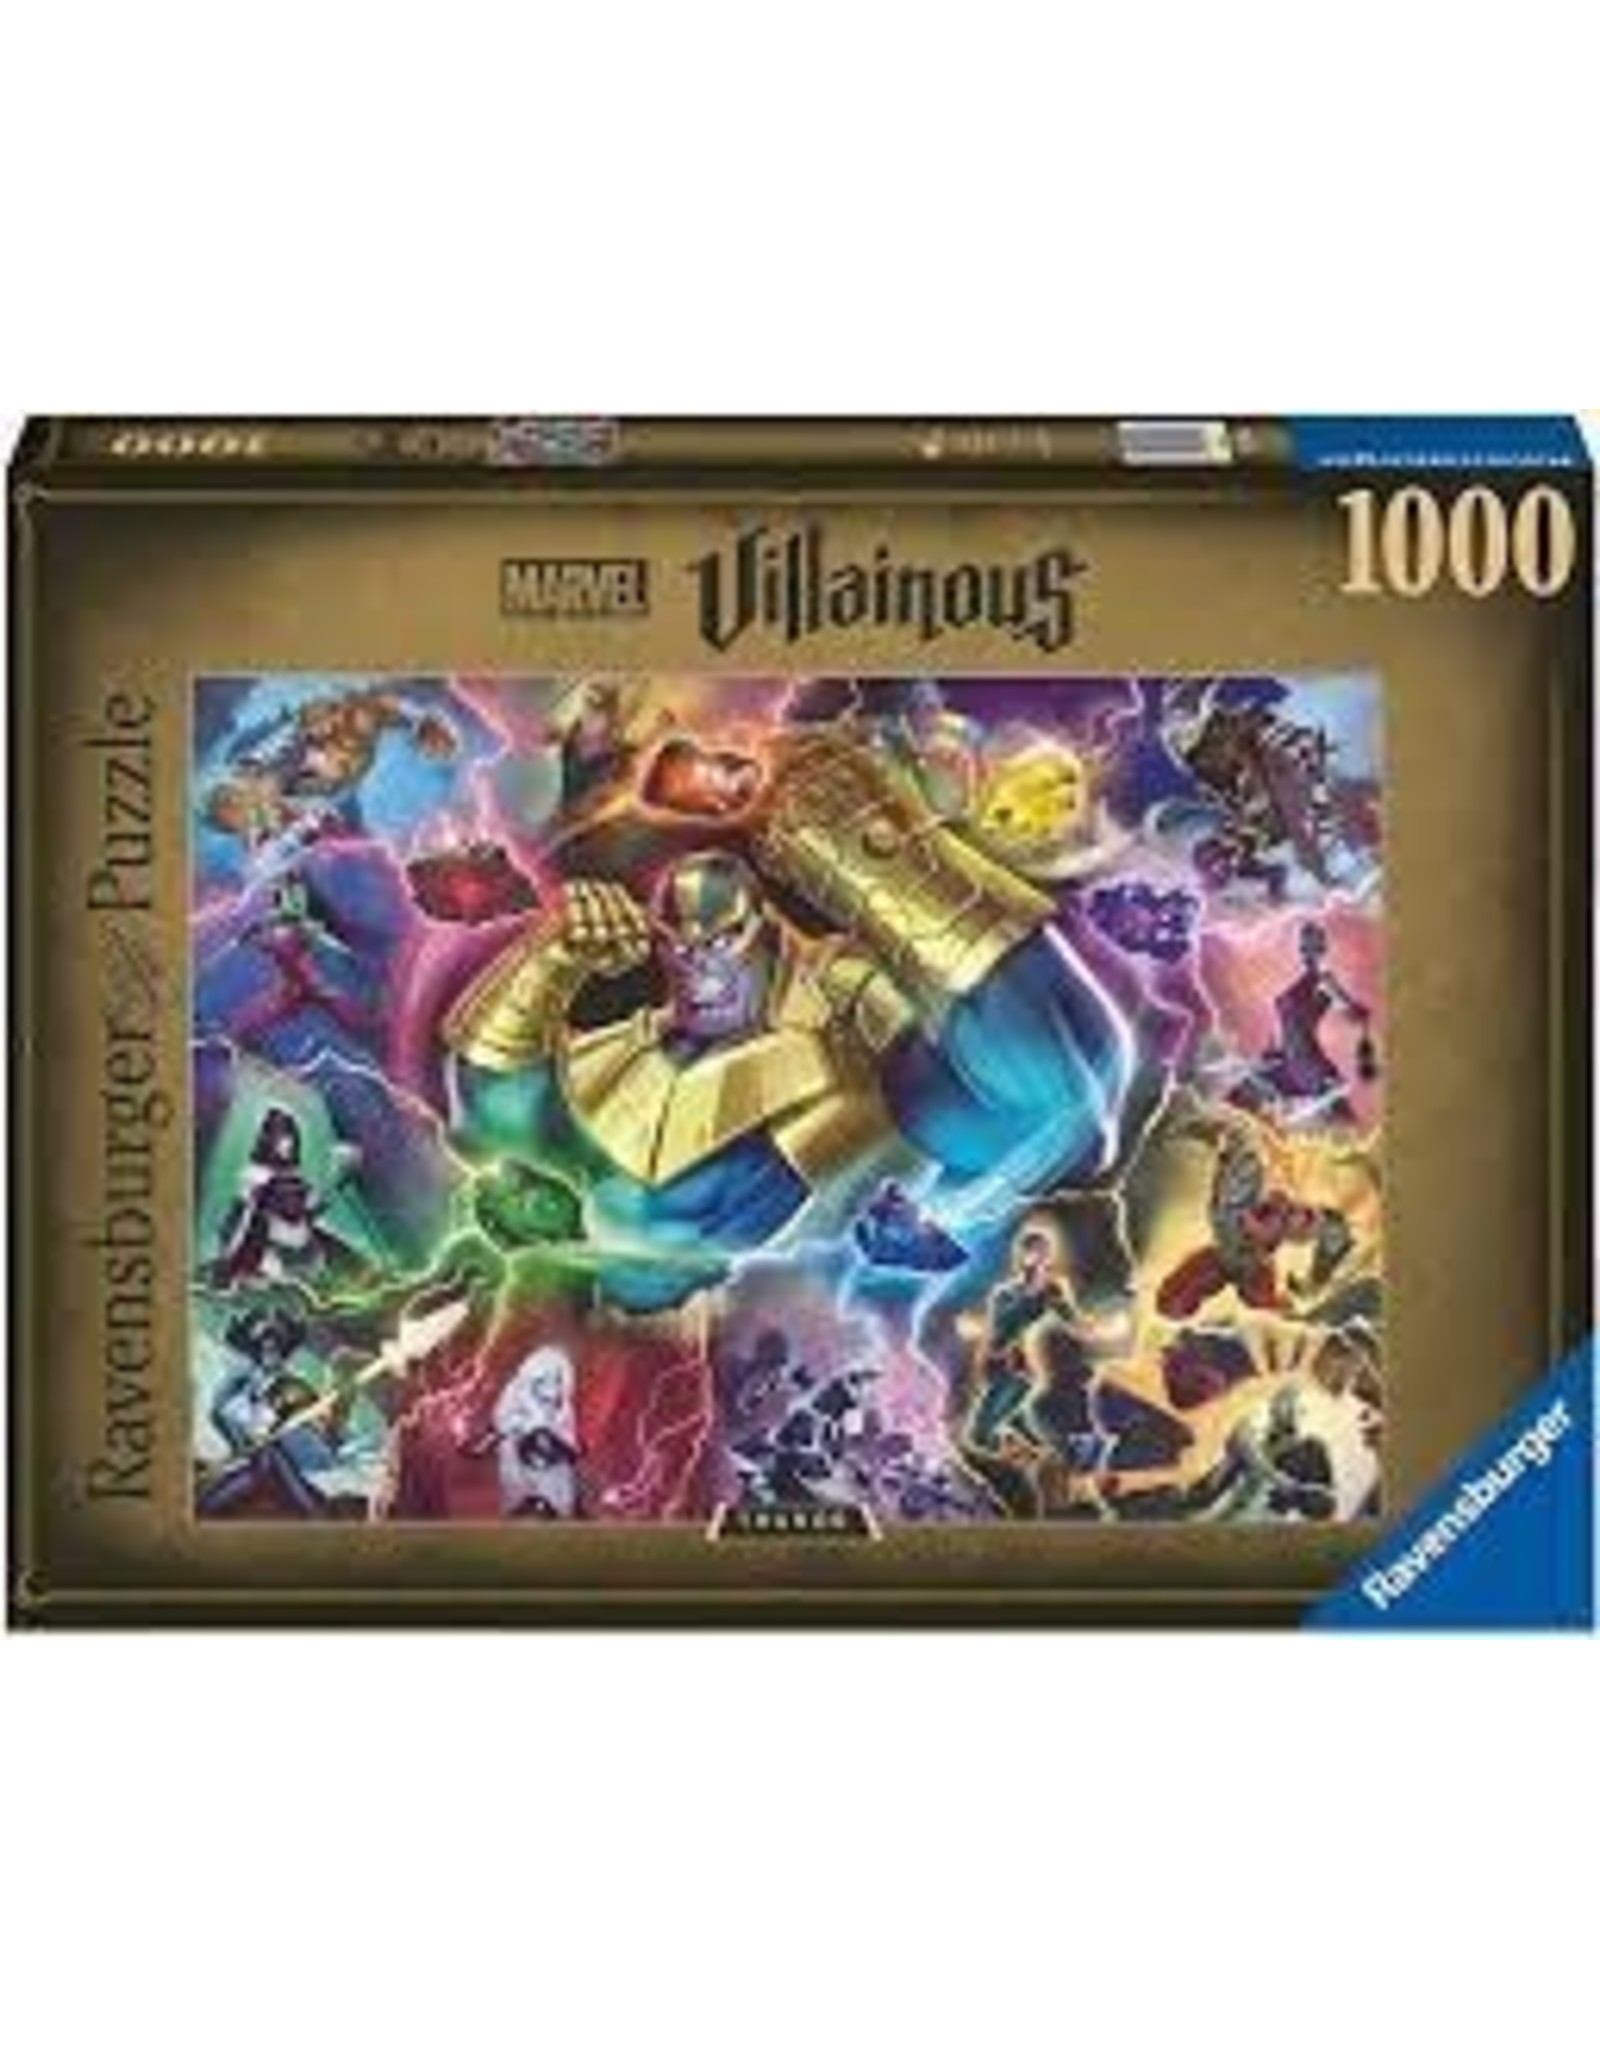 Marvel Villainous: Thanos 1000 pc